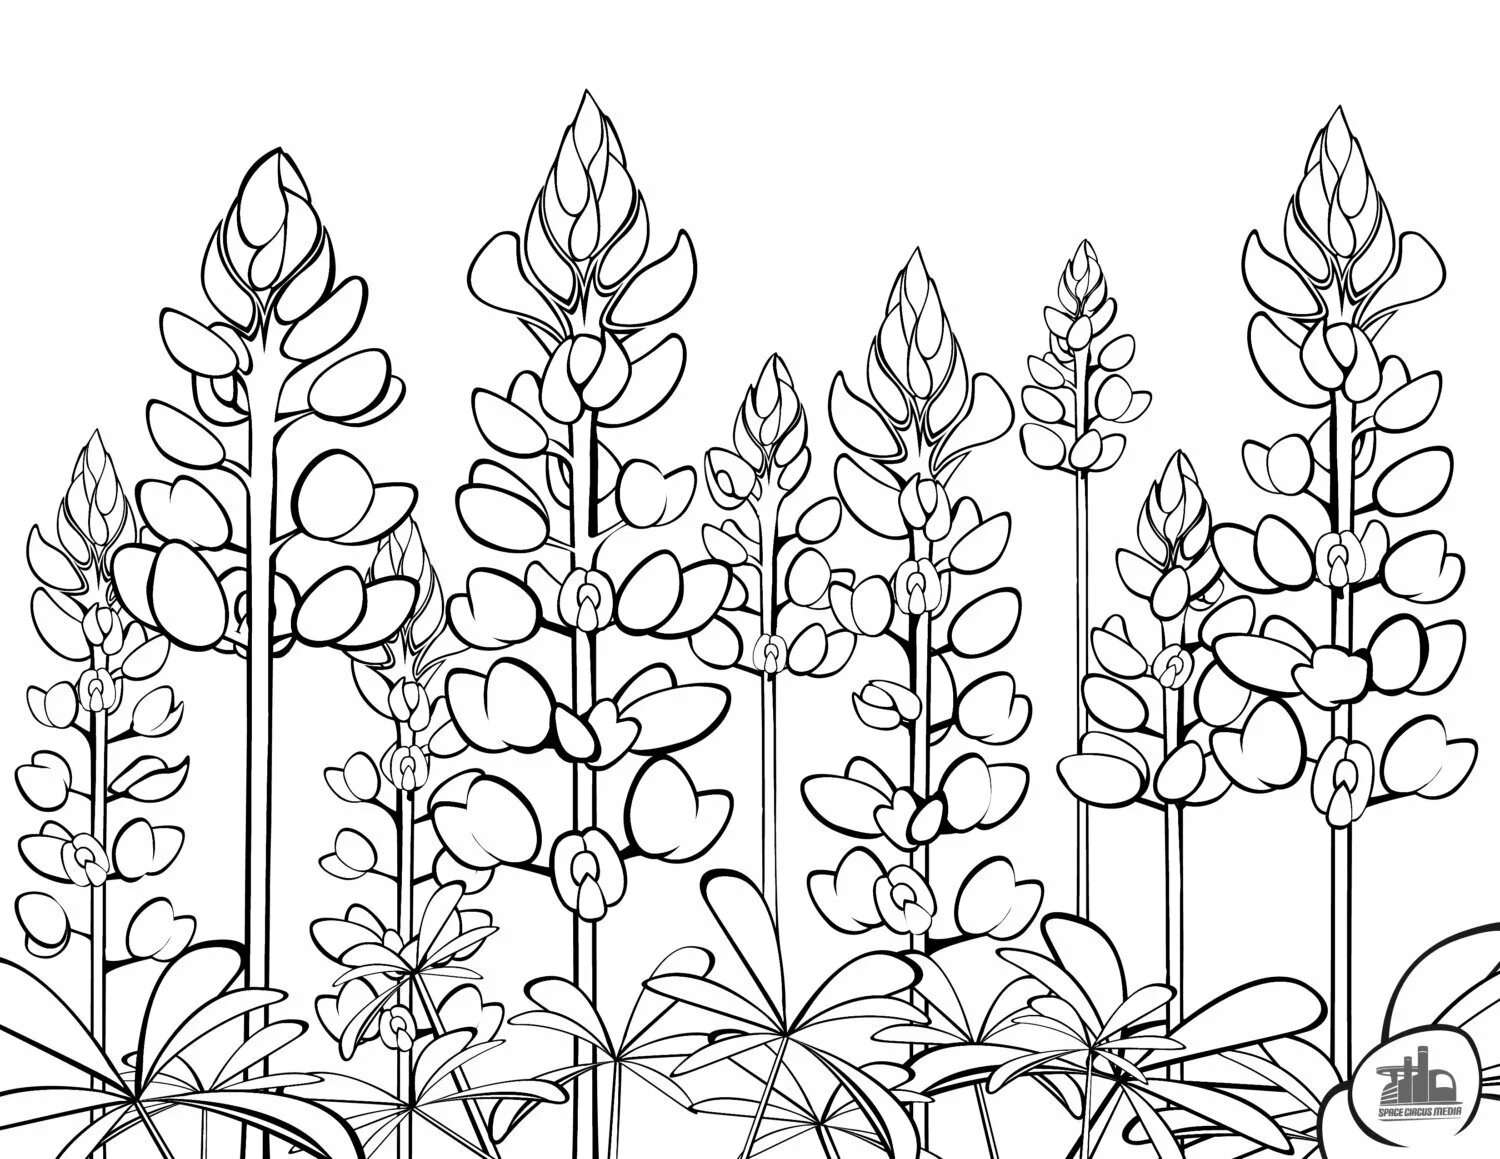 Люпин узколистный листья. Люпин многолистный строение. Растения. Раскраска. Растения раскраска для детей. Plant coloring